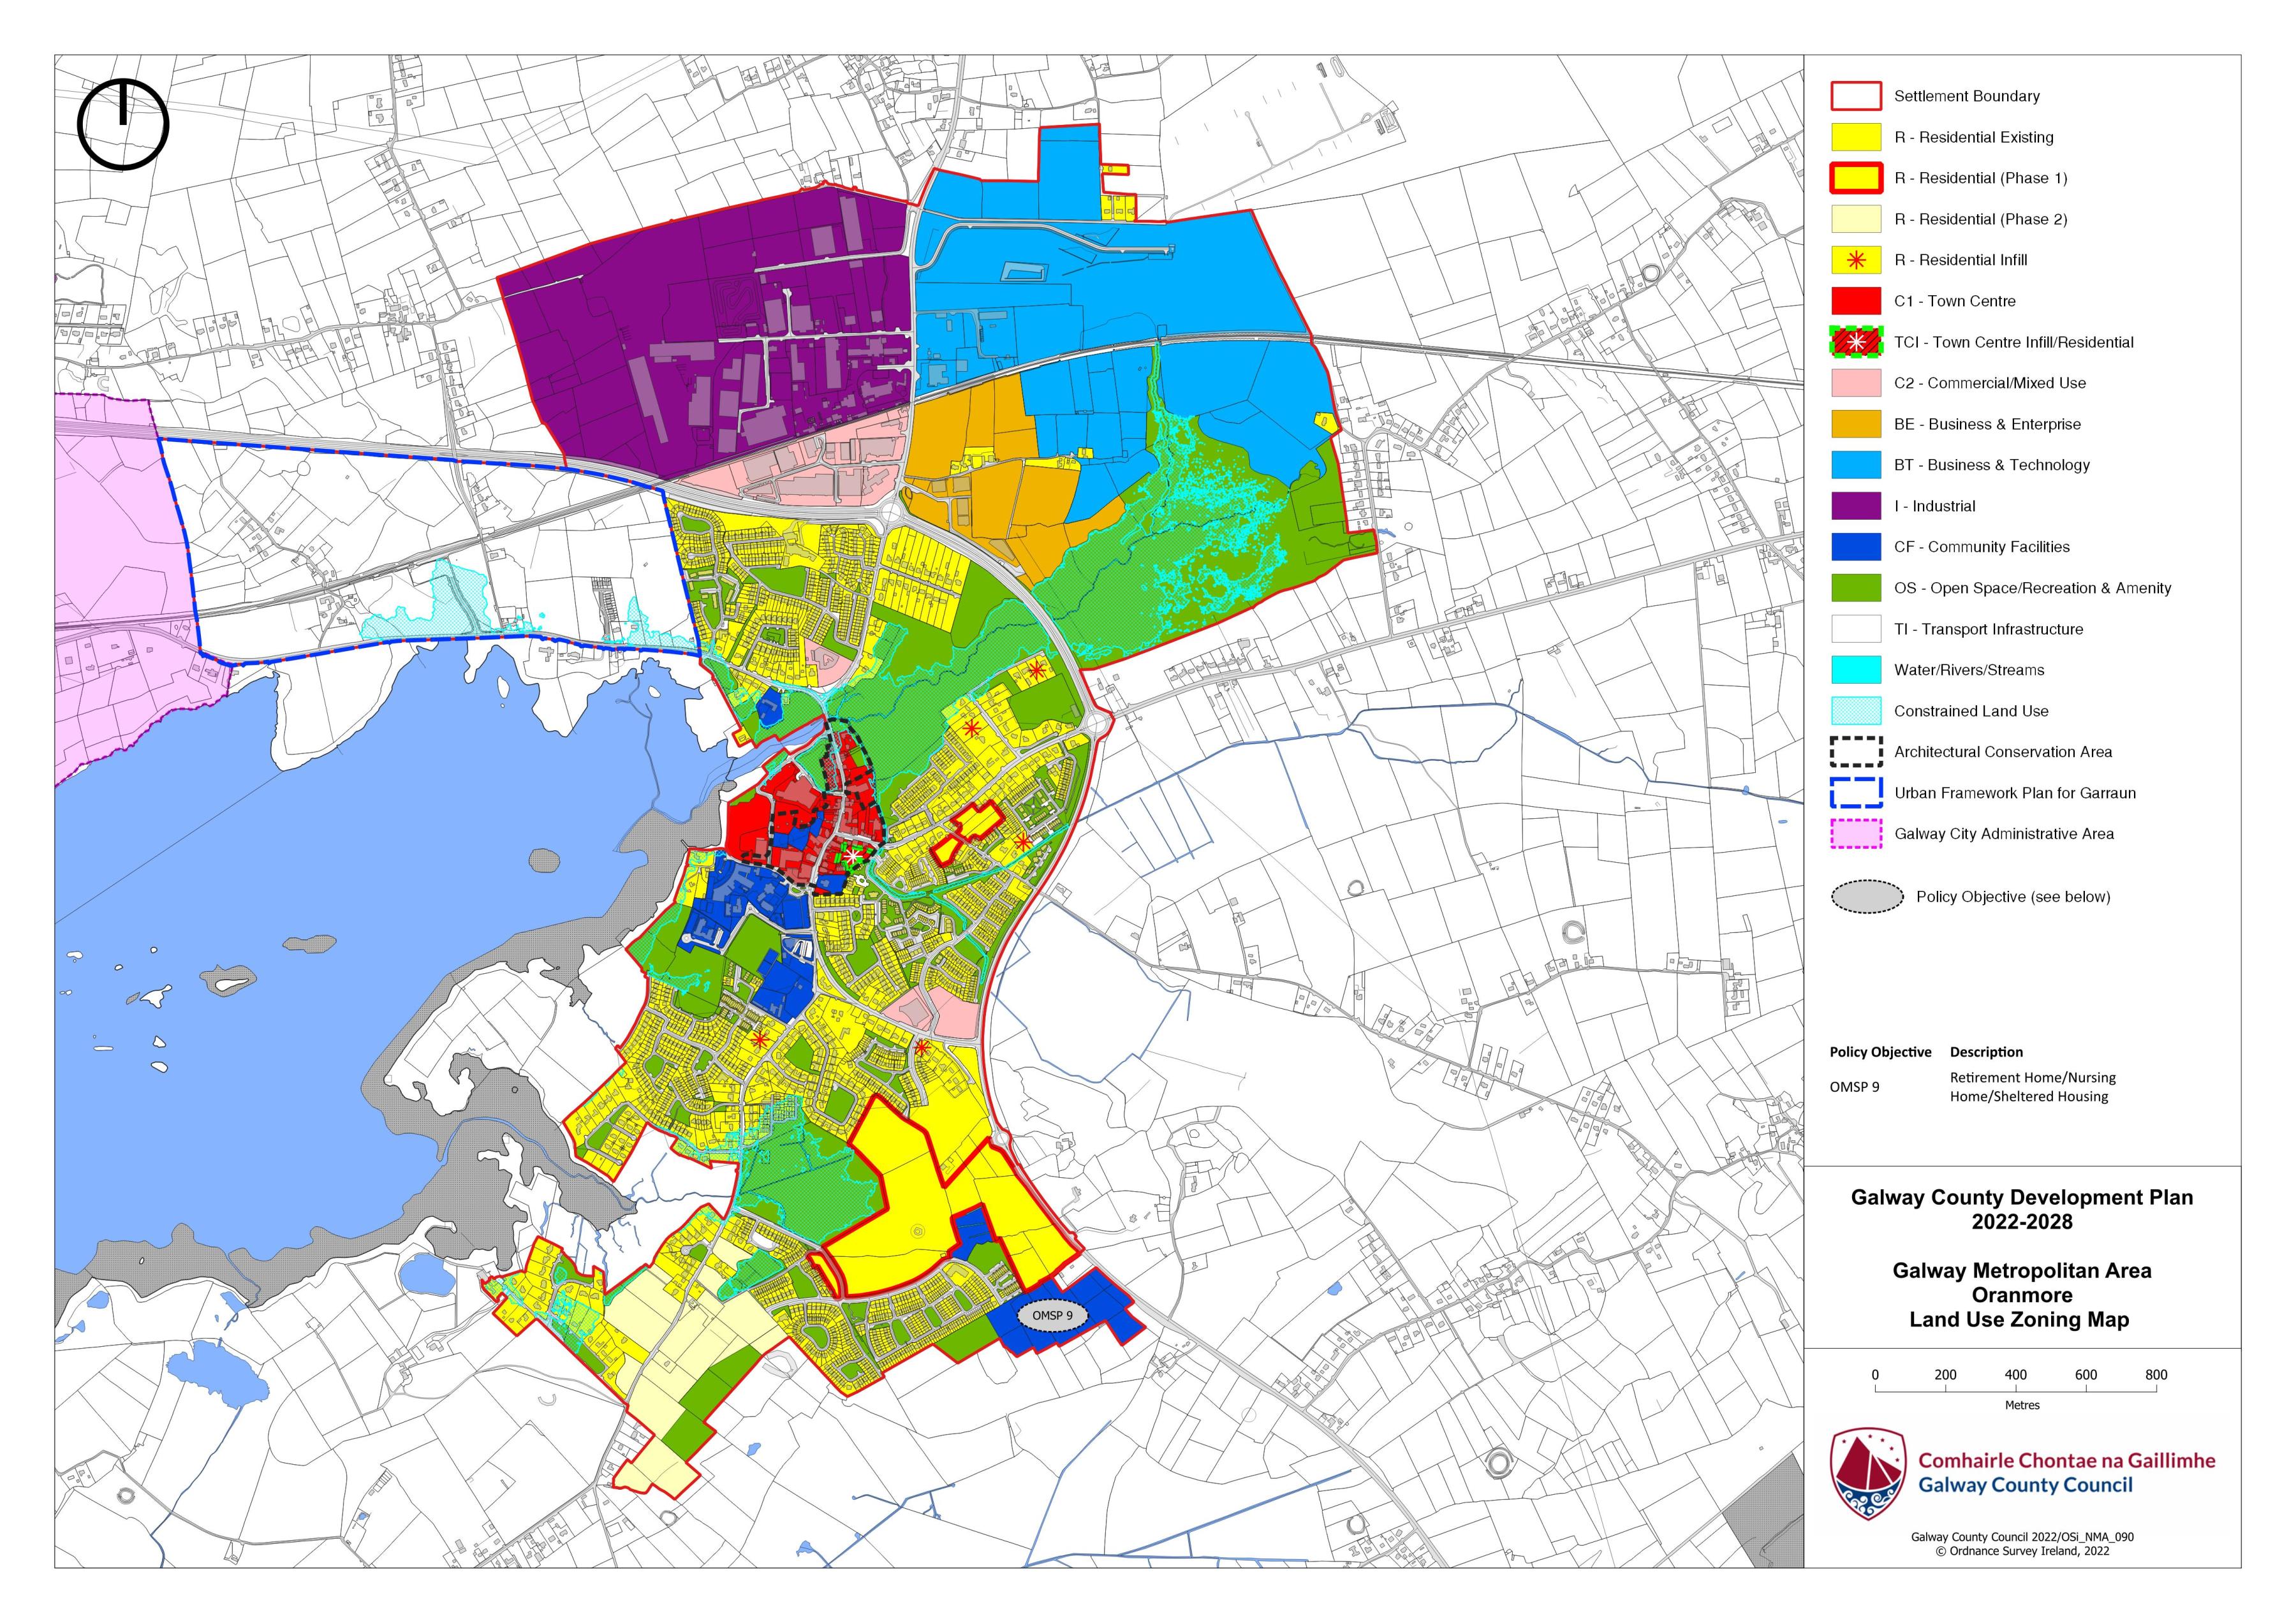 Oranmore Land Use Zoning Map